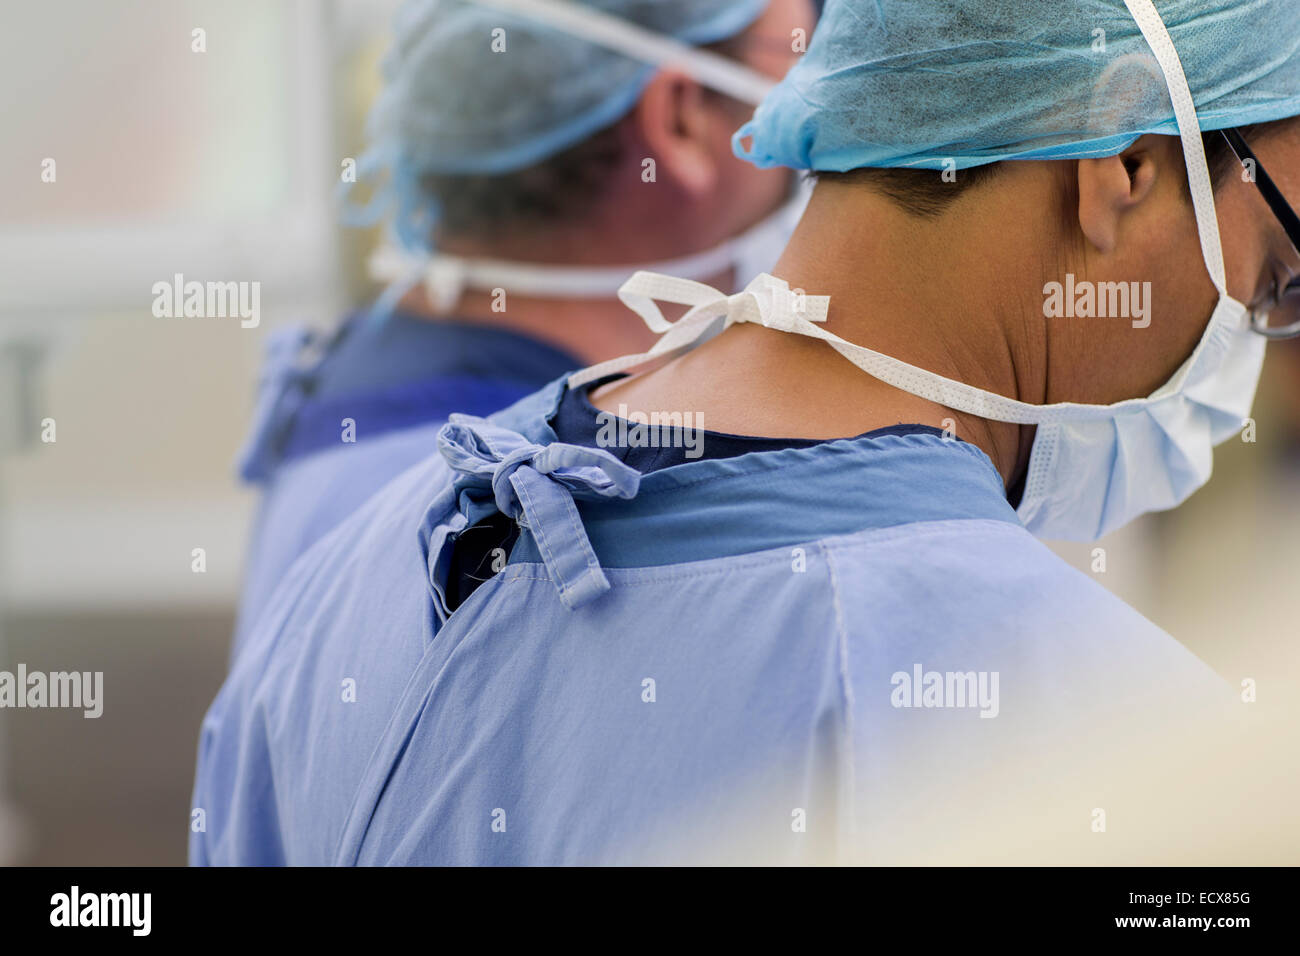 Les médecins portant des masques chirurgicaux, caps et frotte en salle d'opération Banque D'Images